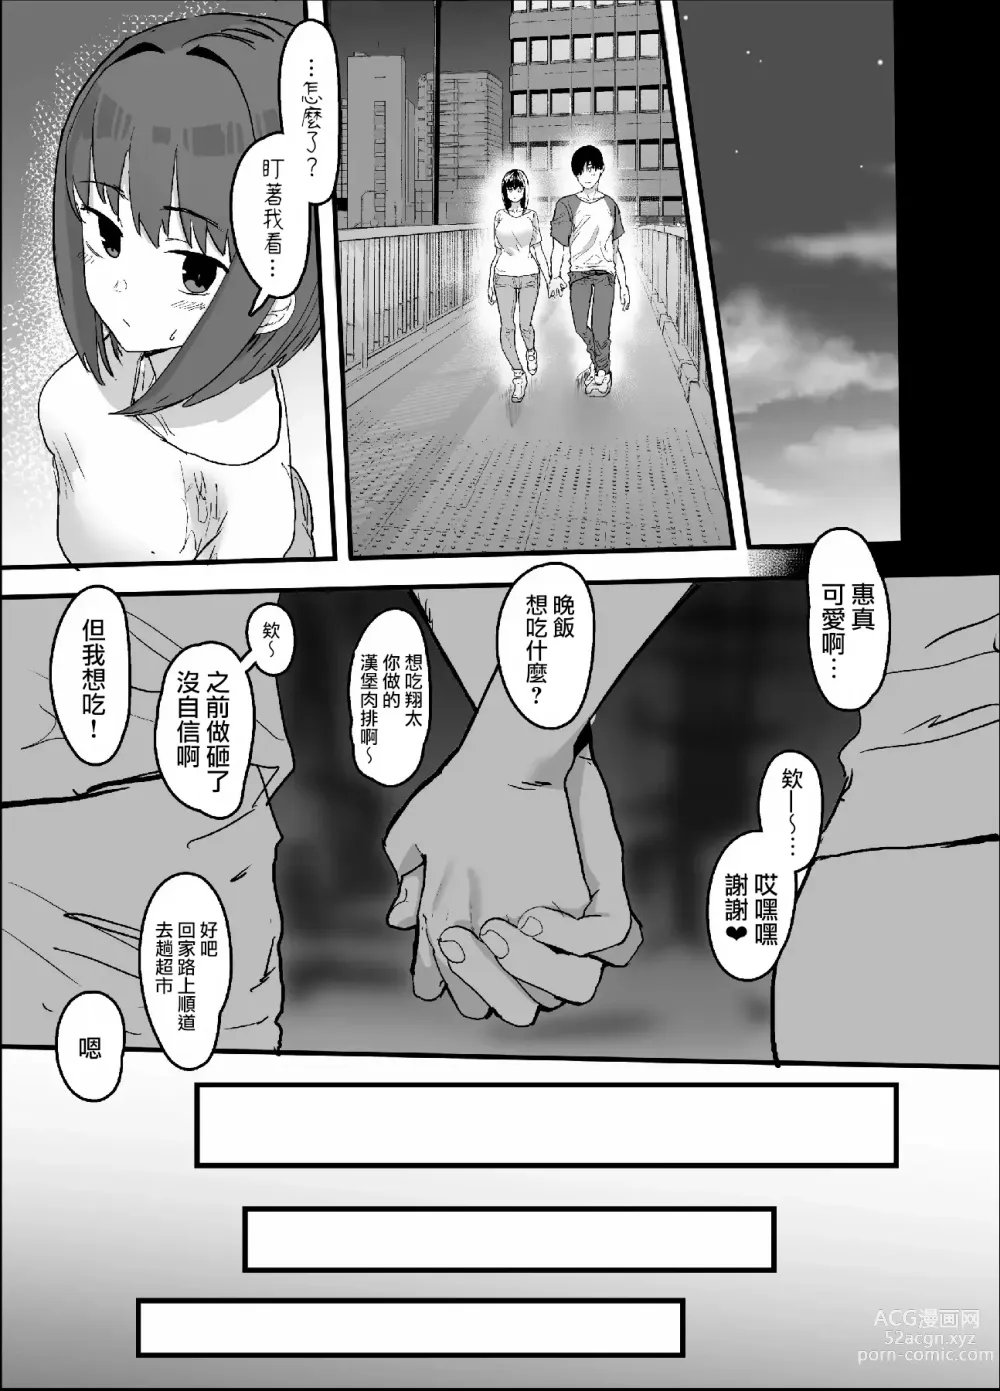 Page 68 of doujinshi ネトラセクラブ